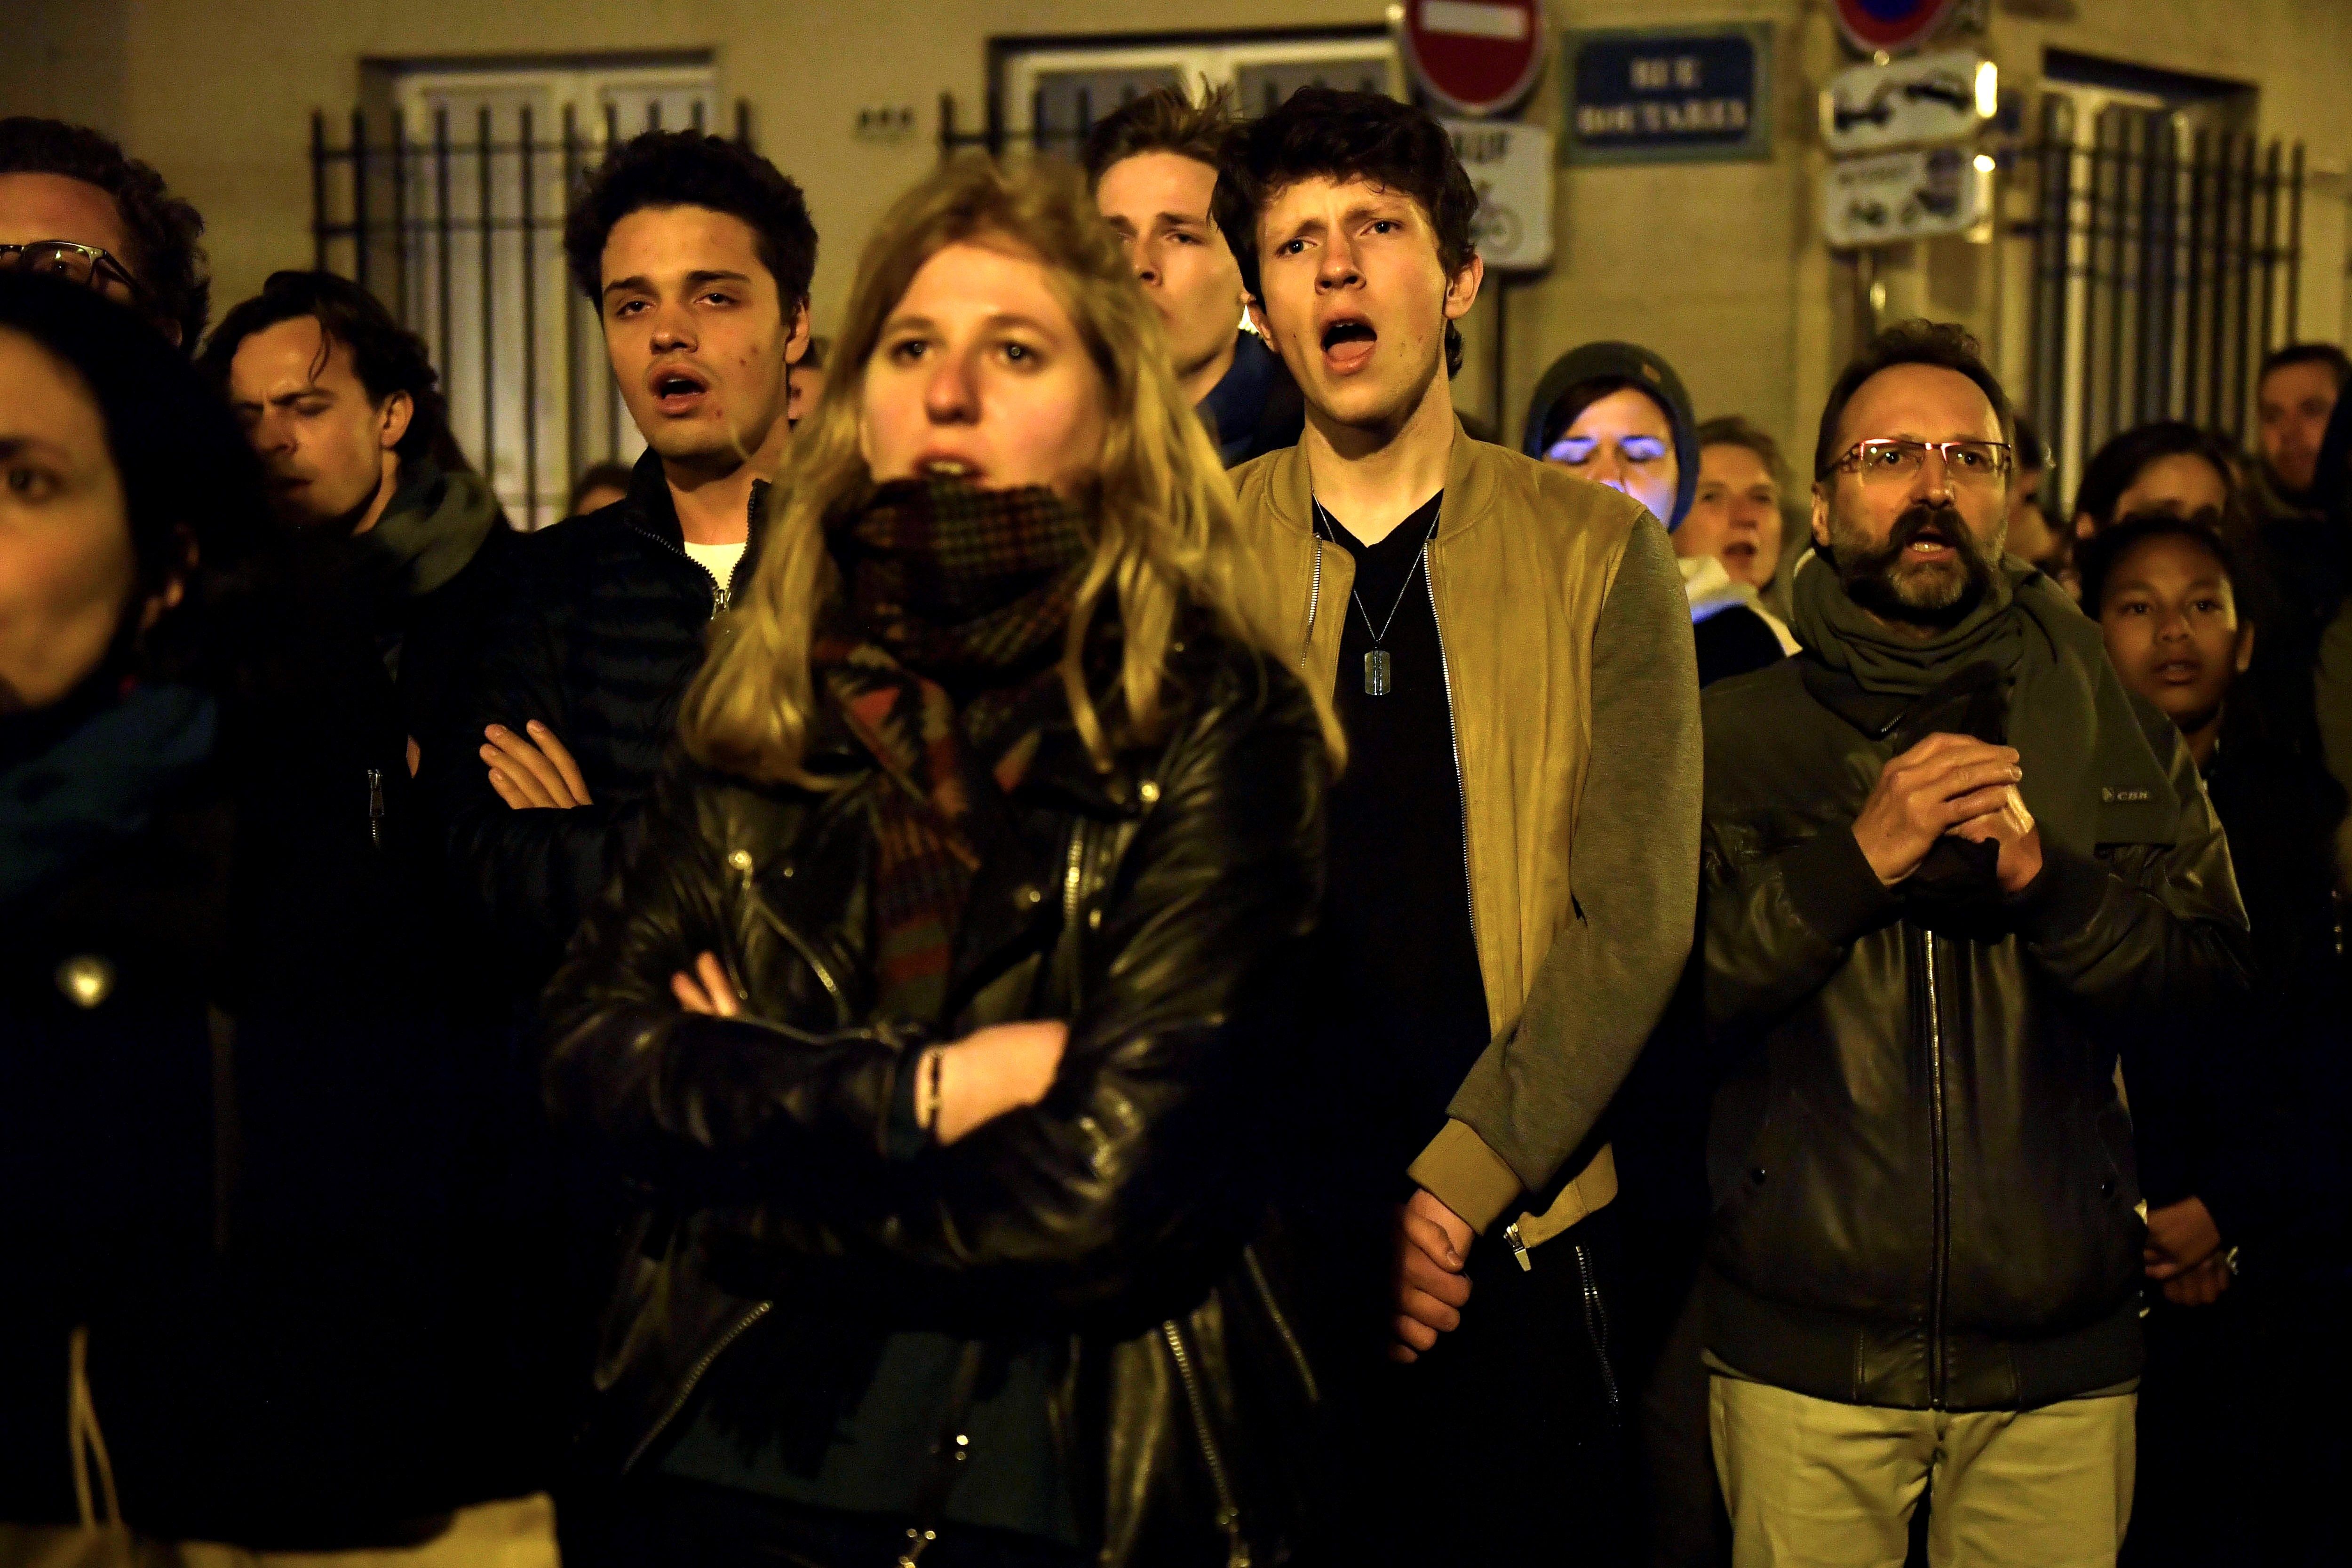 Vídeo: L'emocionant cant dels parisencs mentre es crema la catedral